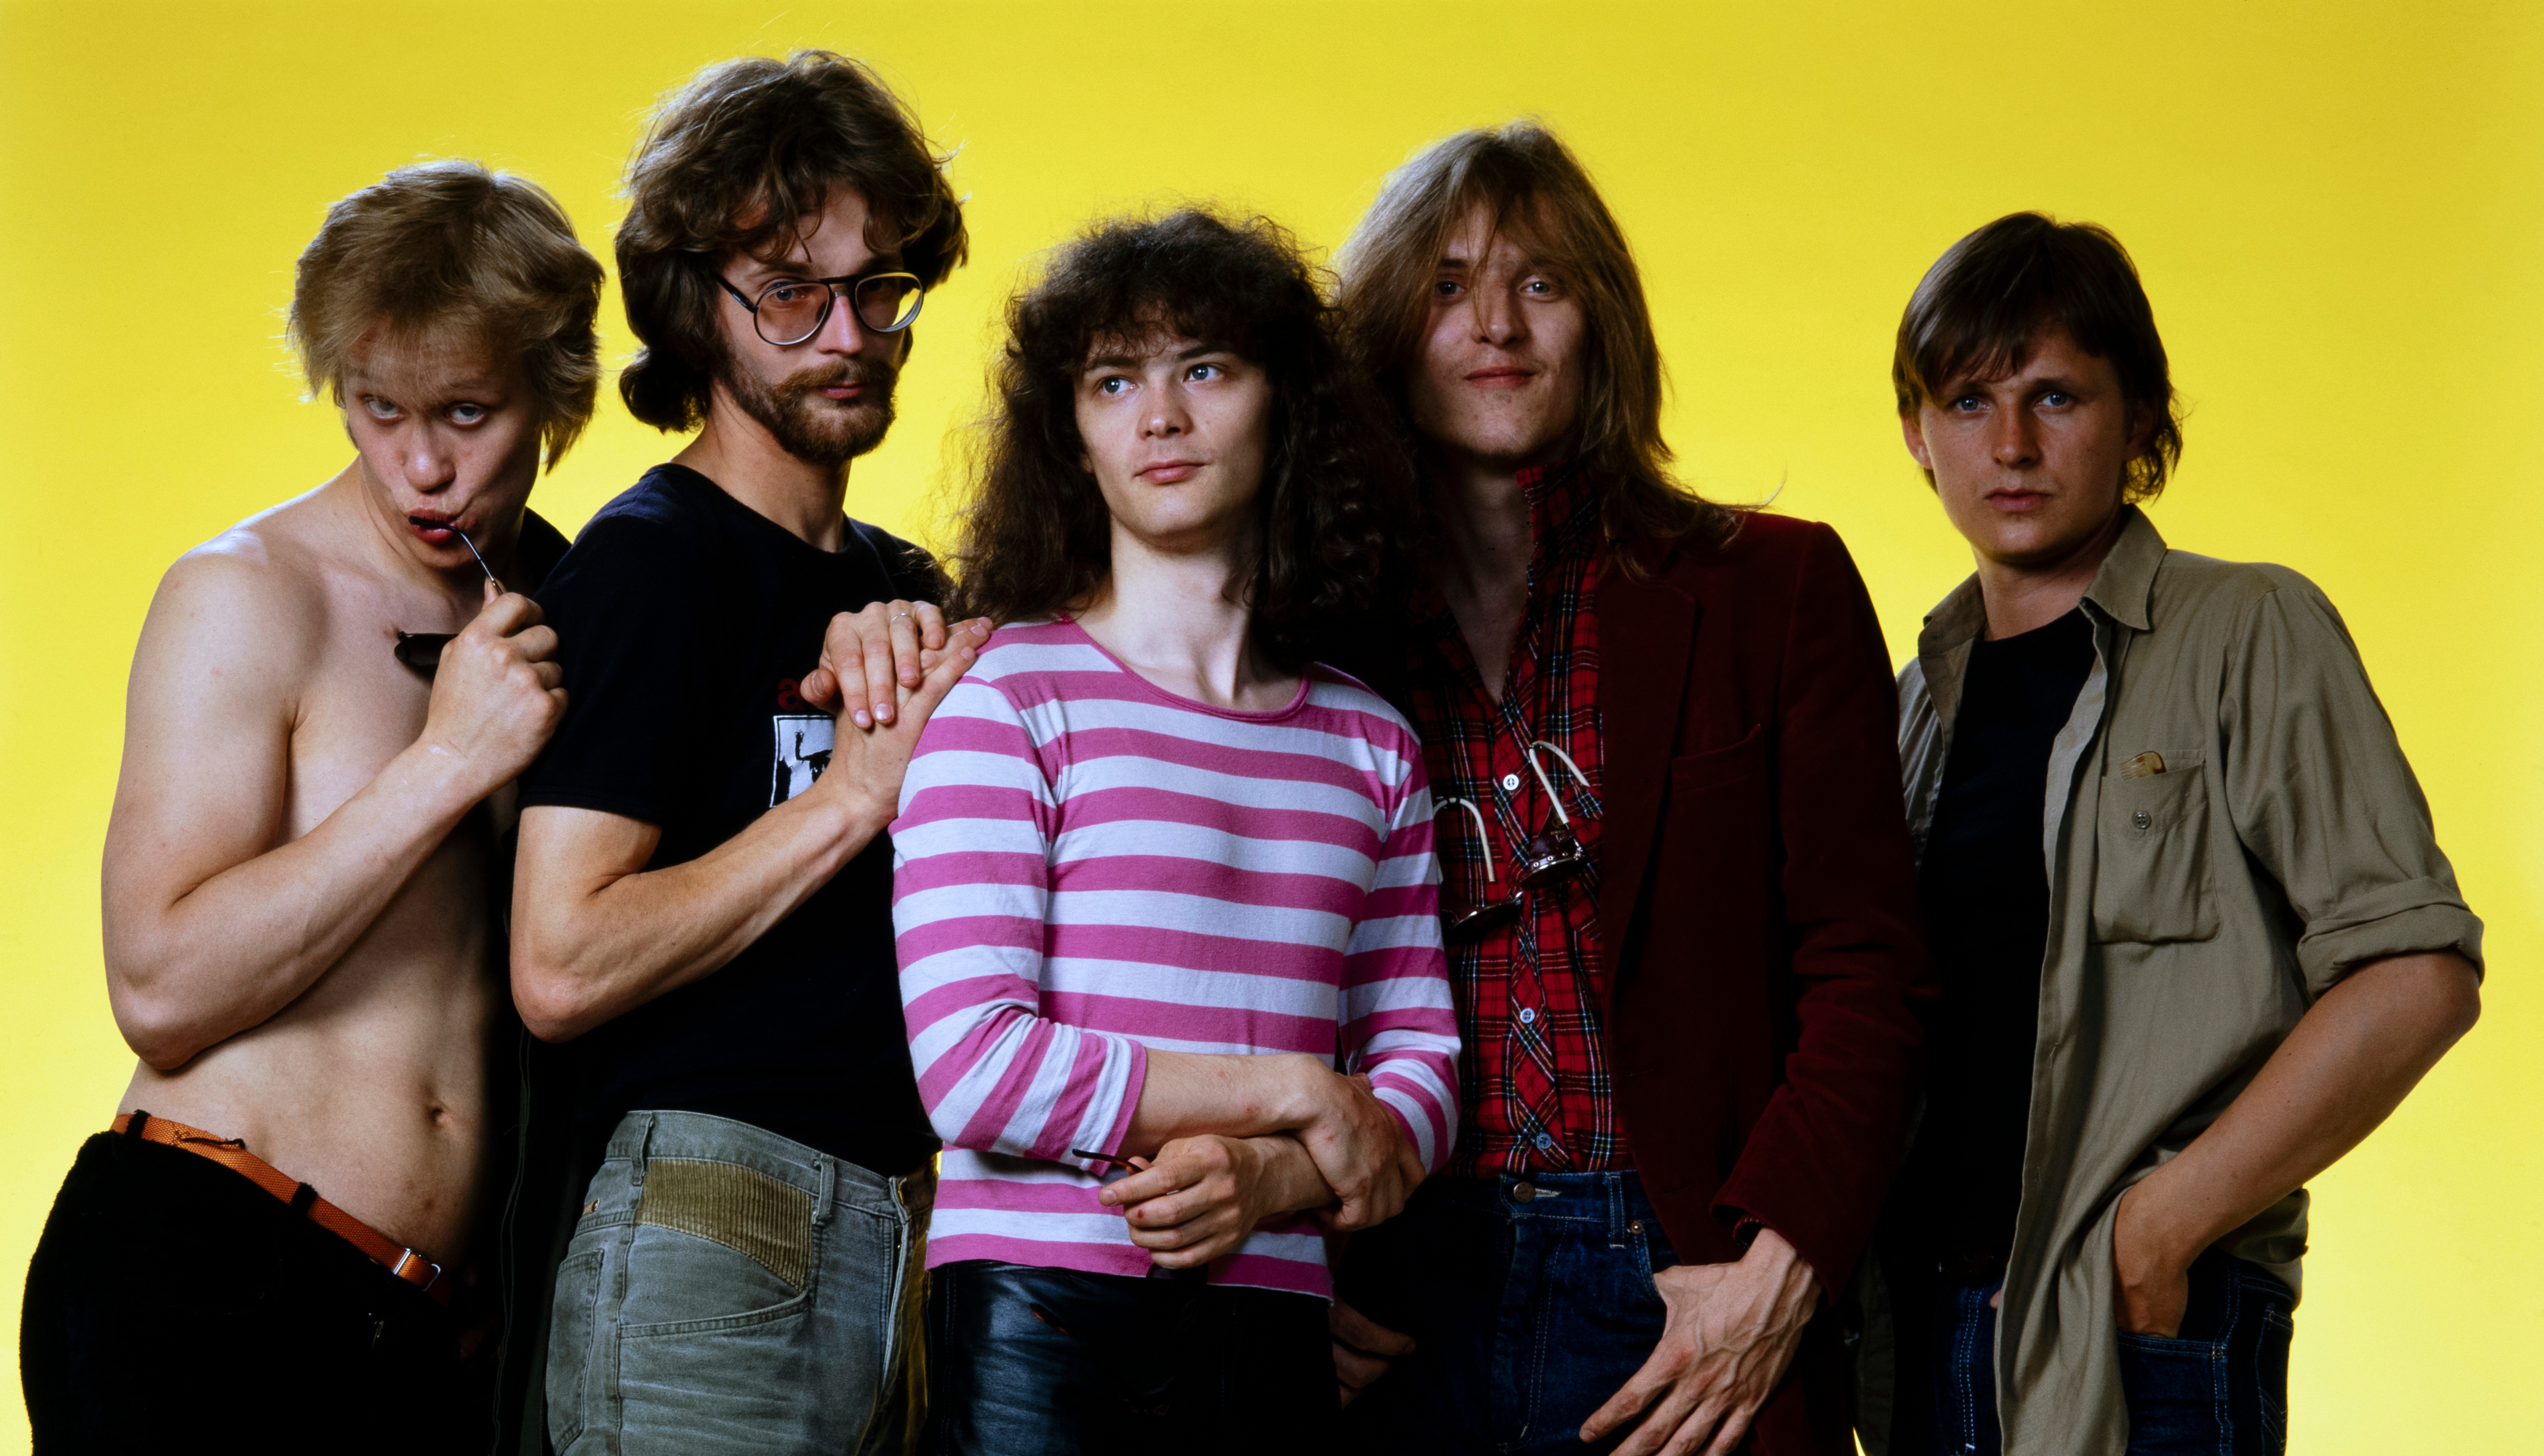 Kuvassa ovat Eppu Normaalin viisi jäsentä seisomassa.  Heistä vasemmalla olevalla Martti Syrjällä ei ole paitaa ja muilla on joko mustat tai keskimmäisellä valko-violetti t-paita.  Tausta on keltainen.